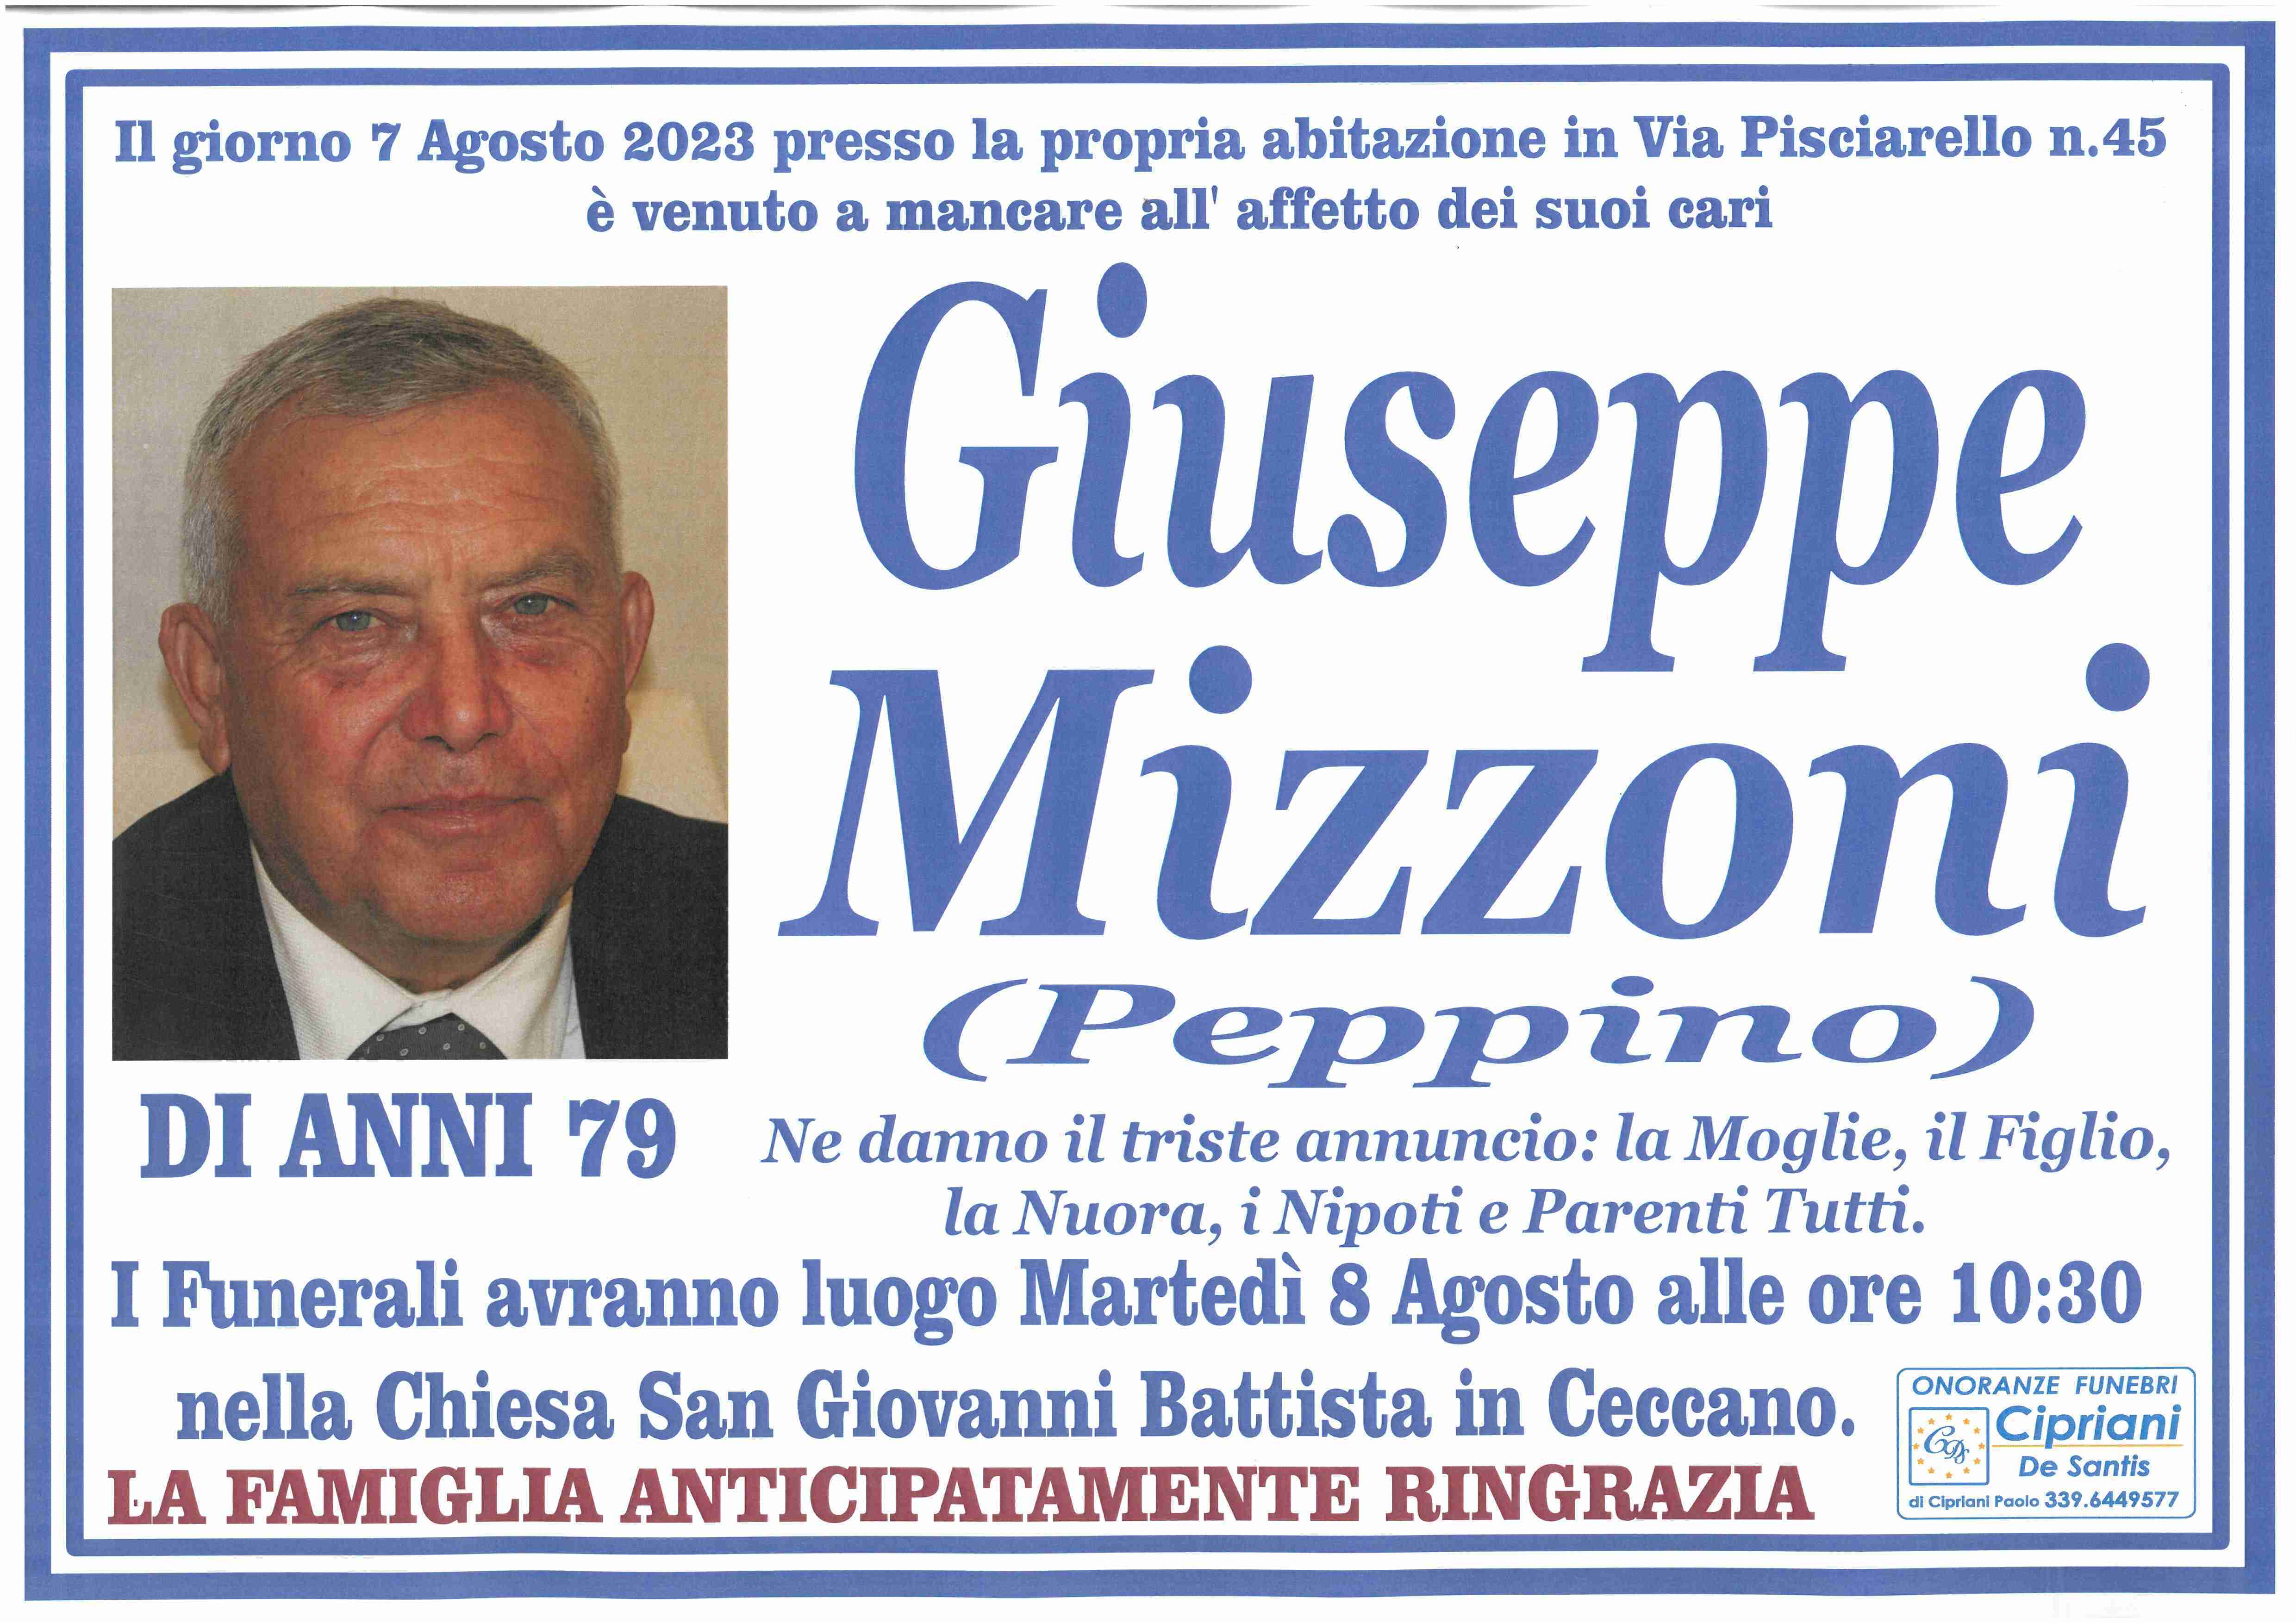 Giuseppe Mizzoni